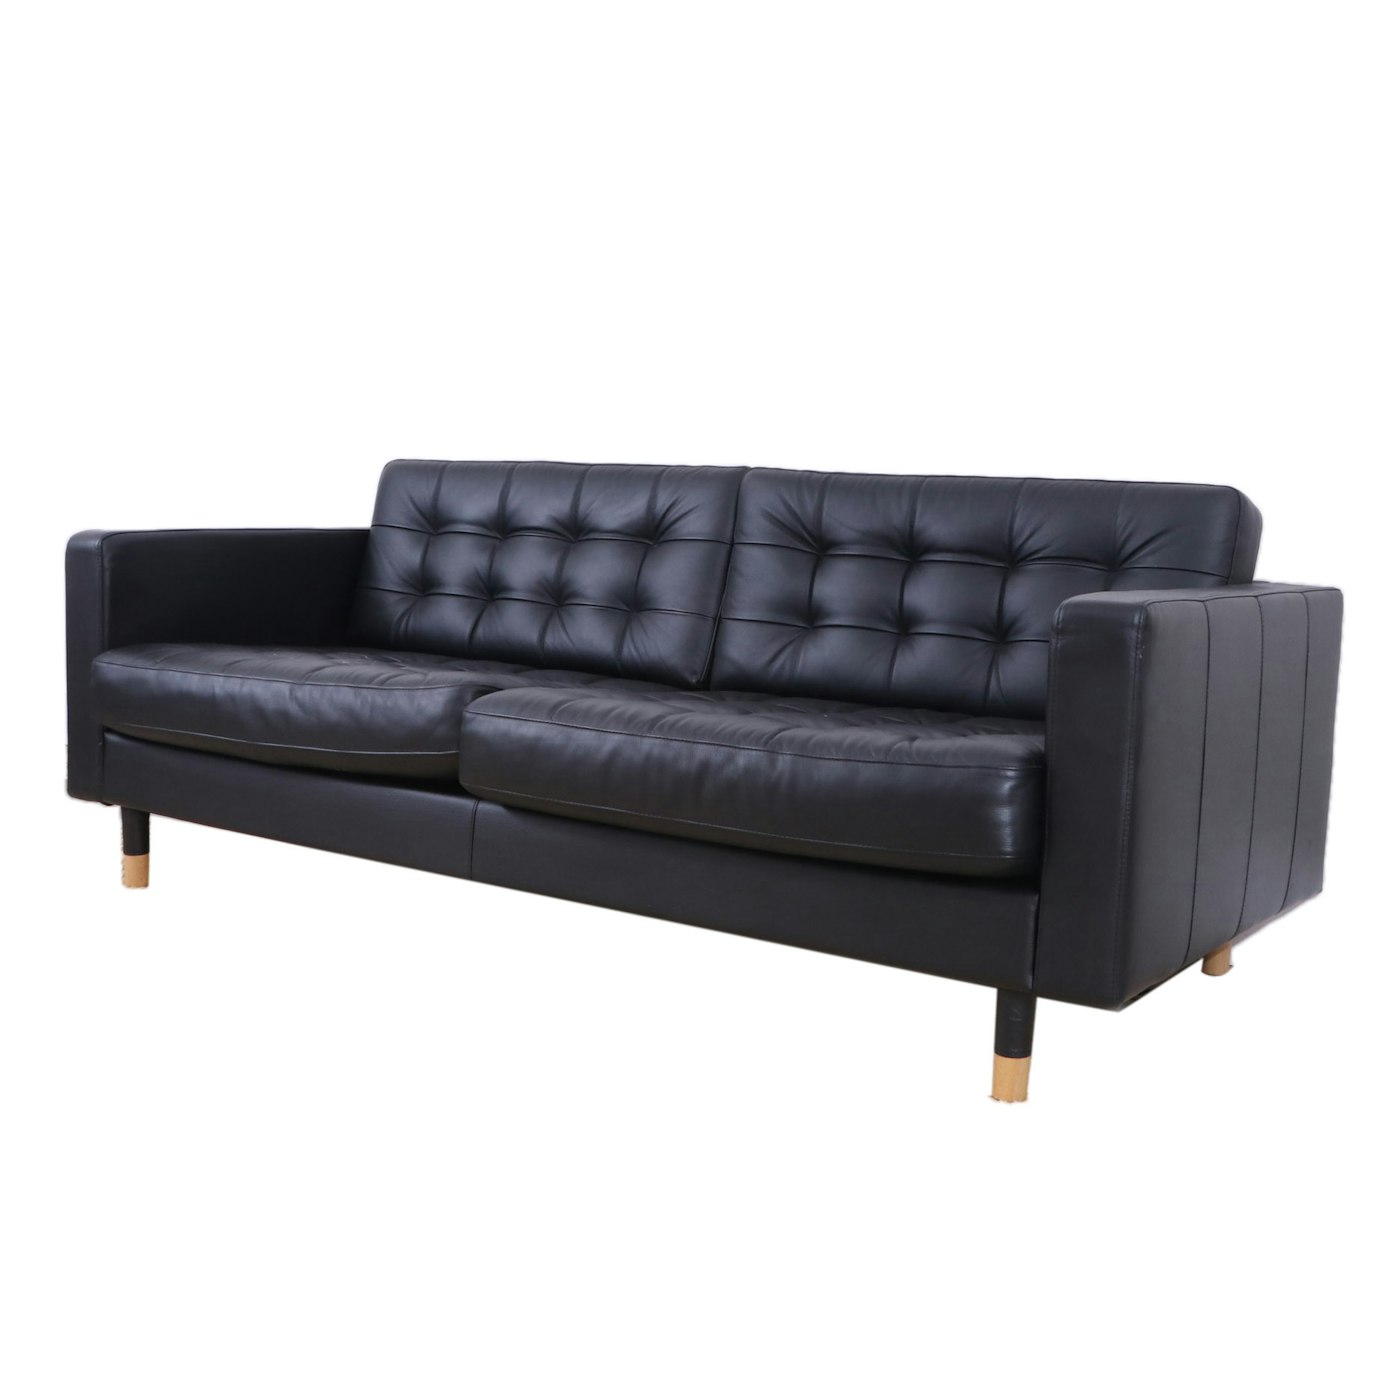 Ikea Morabo Black Tufted Leather Studio Sofa Ebth